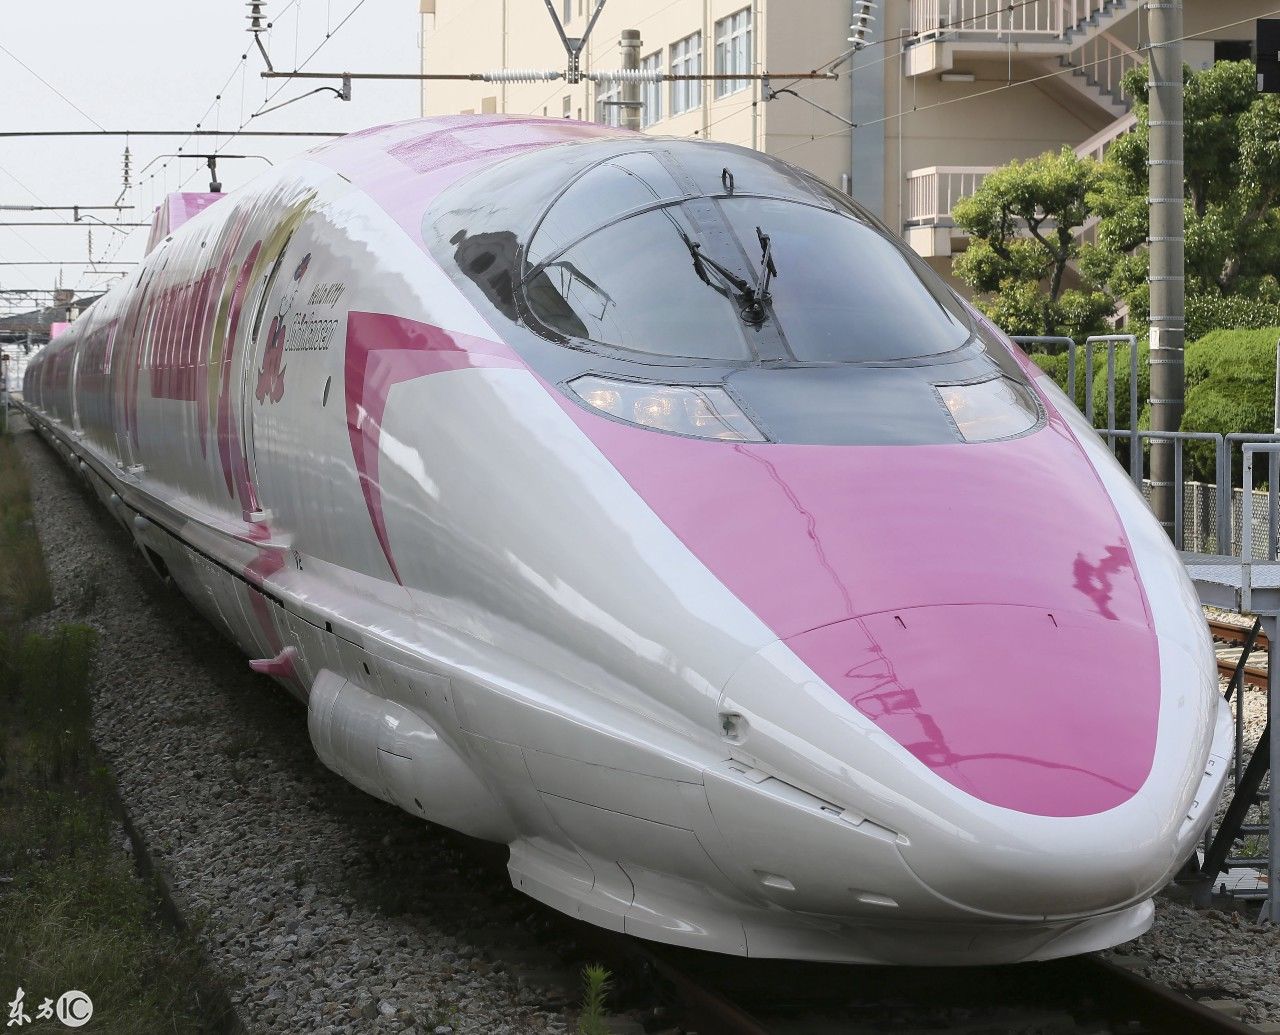 萌萌哒少女心,日本新干线列车以凯蒂猫为主题